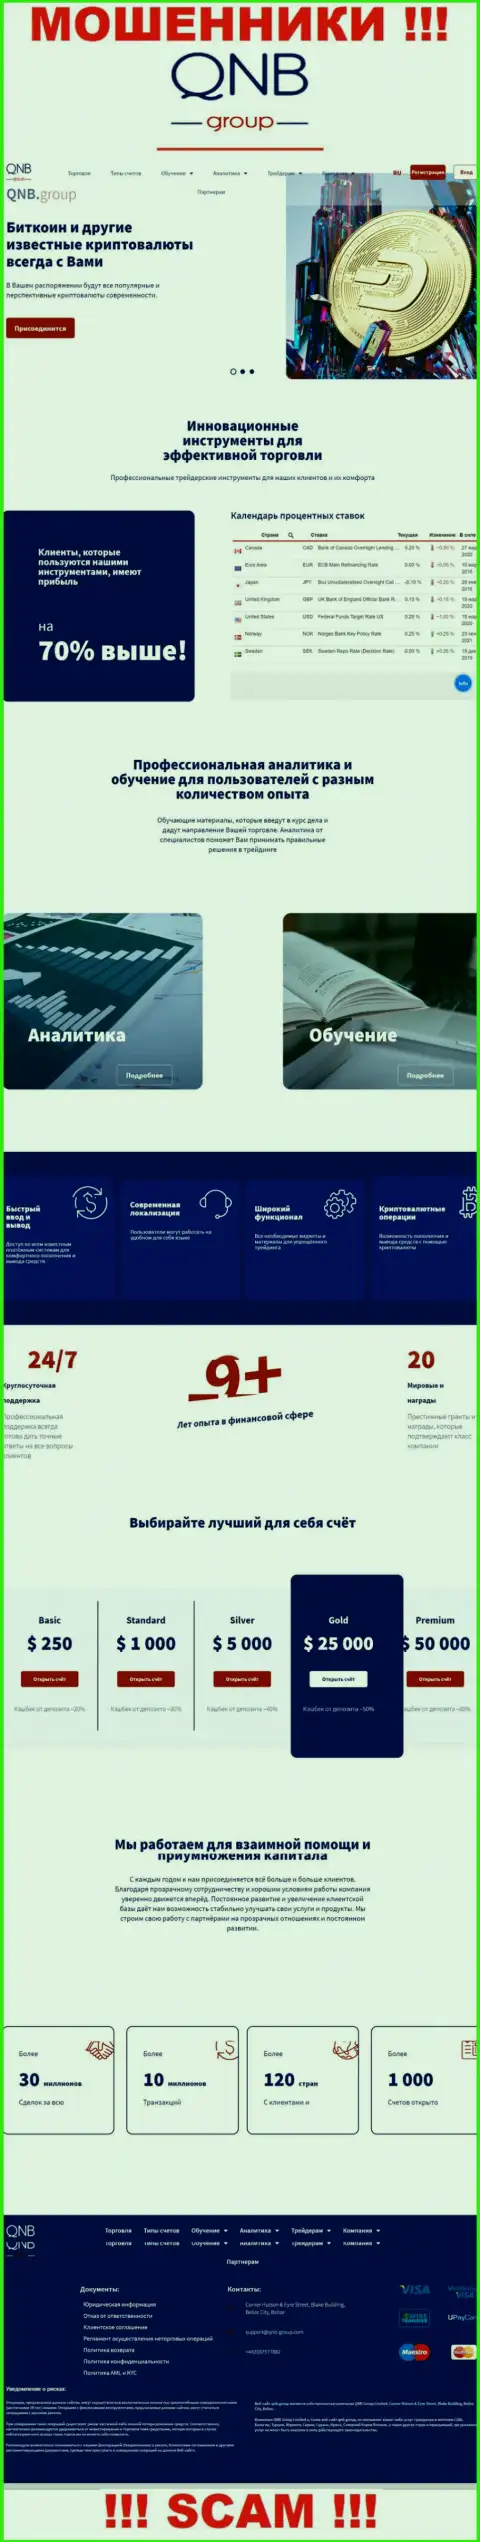 Официальный интернет-сервис мошенников КьюНБГрупп, заполненный материалами для лохов